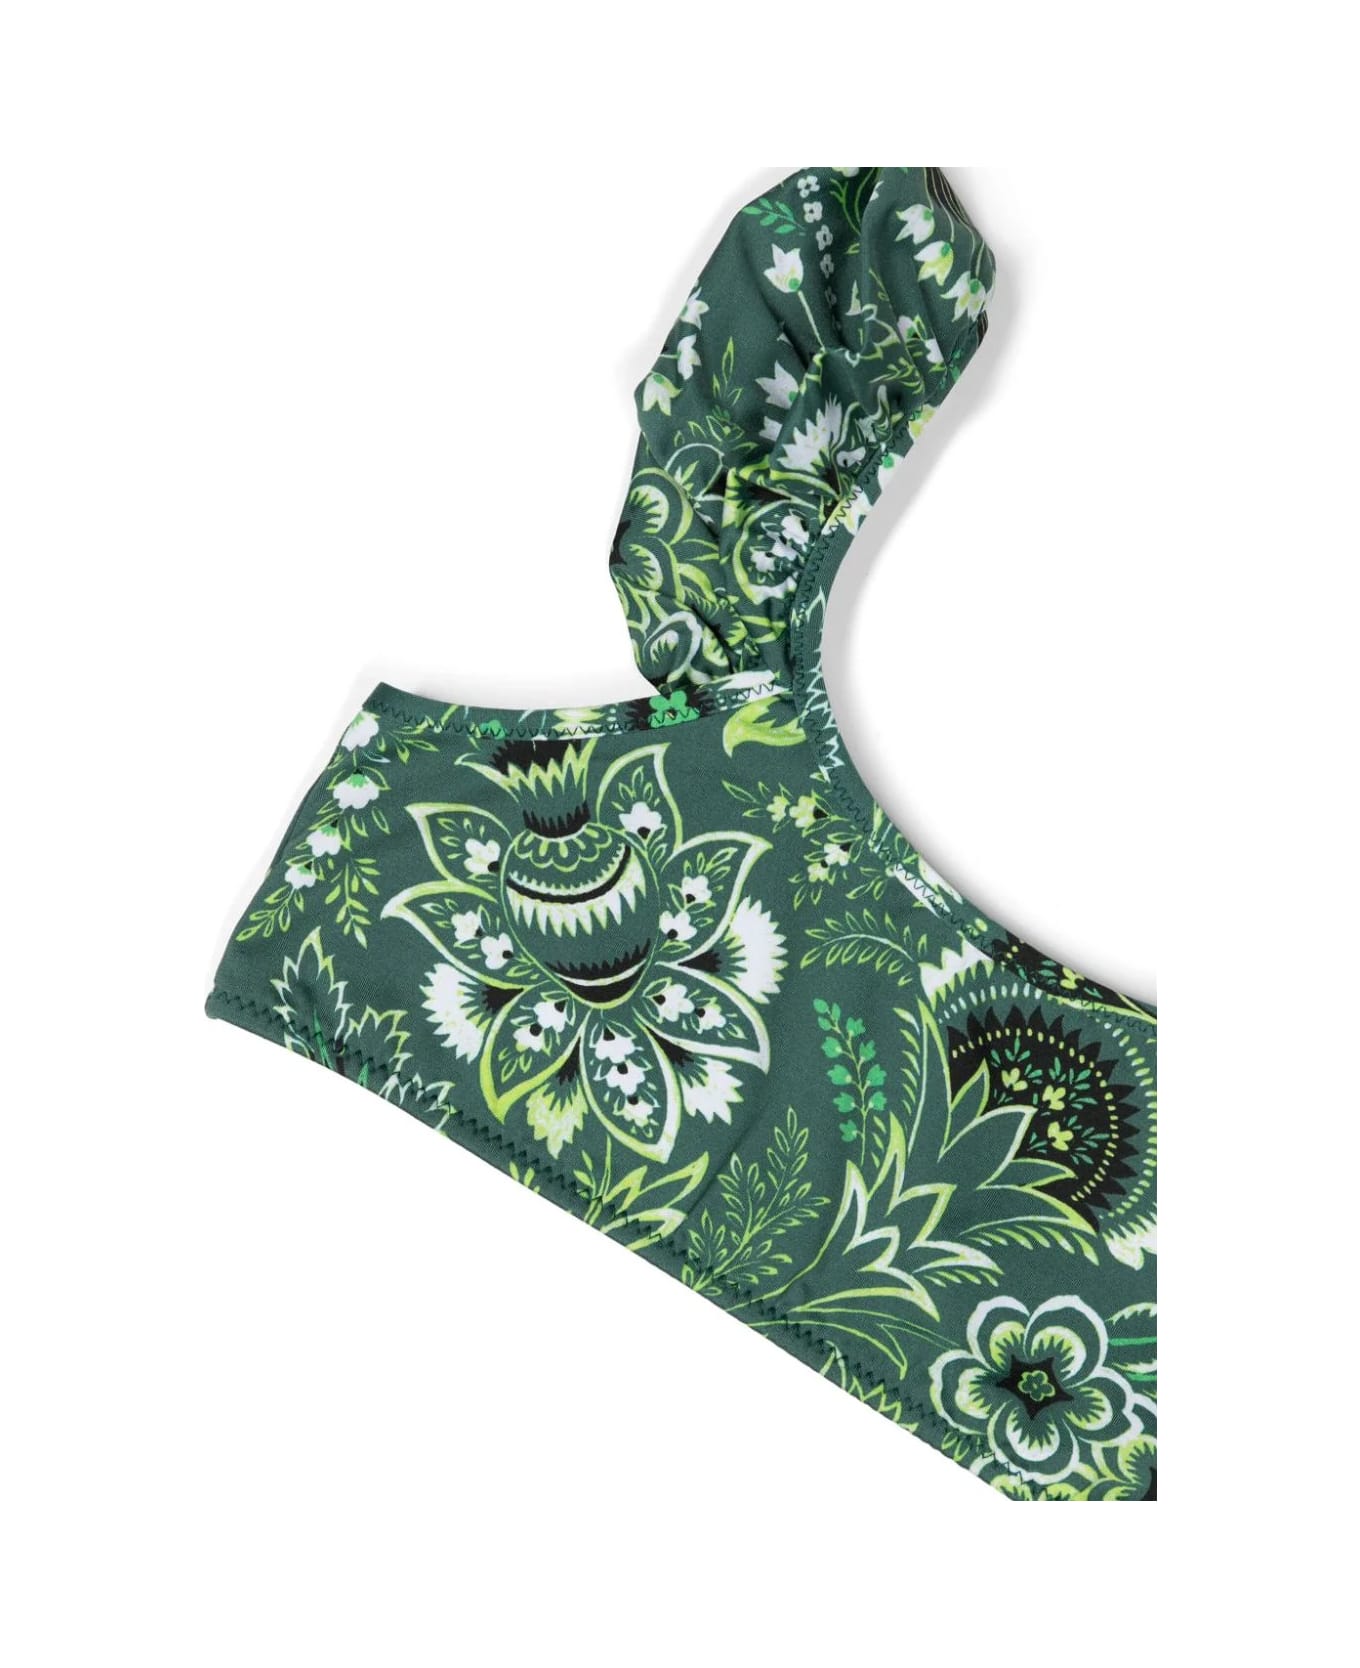 Etro Green Bikini With Ruffles And Paisley Motif - Green